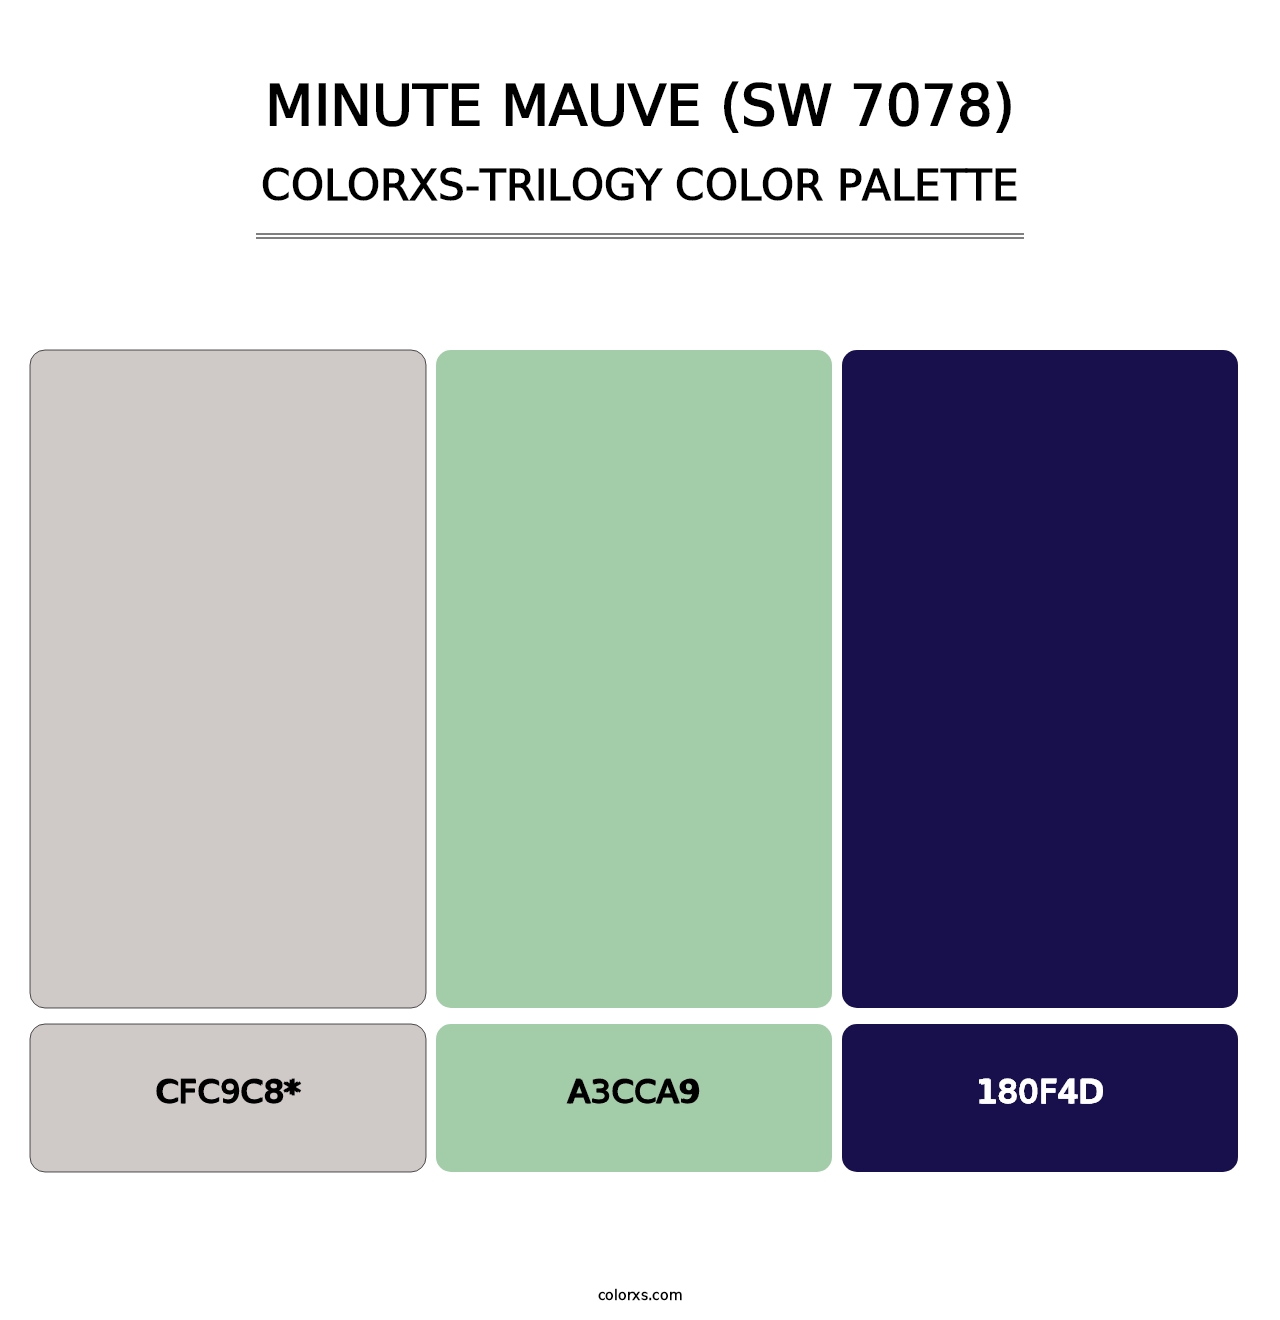 Minute Mauve (SW 7078) - Colorxs Trilogy Palette